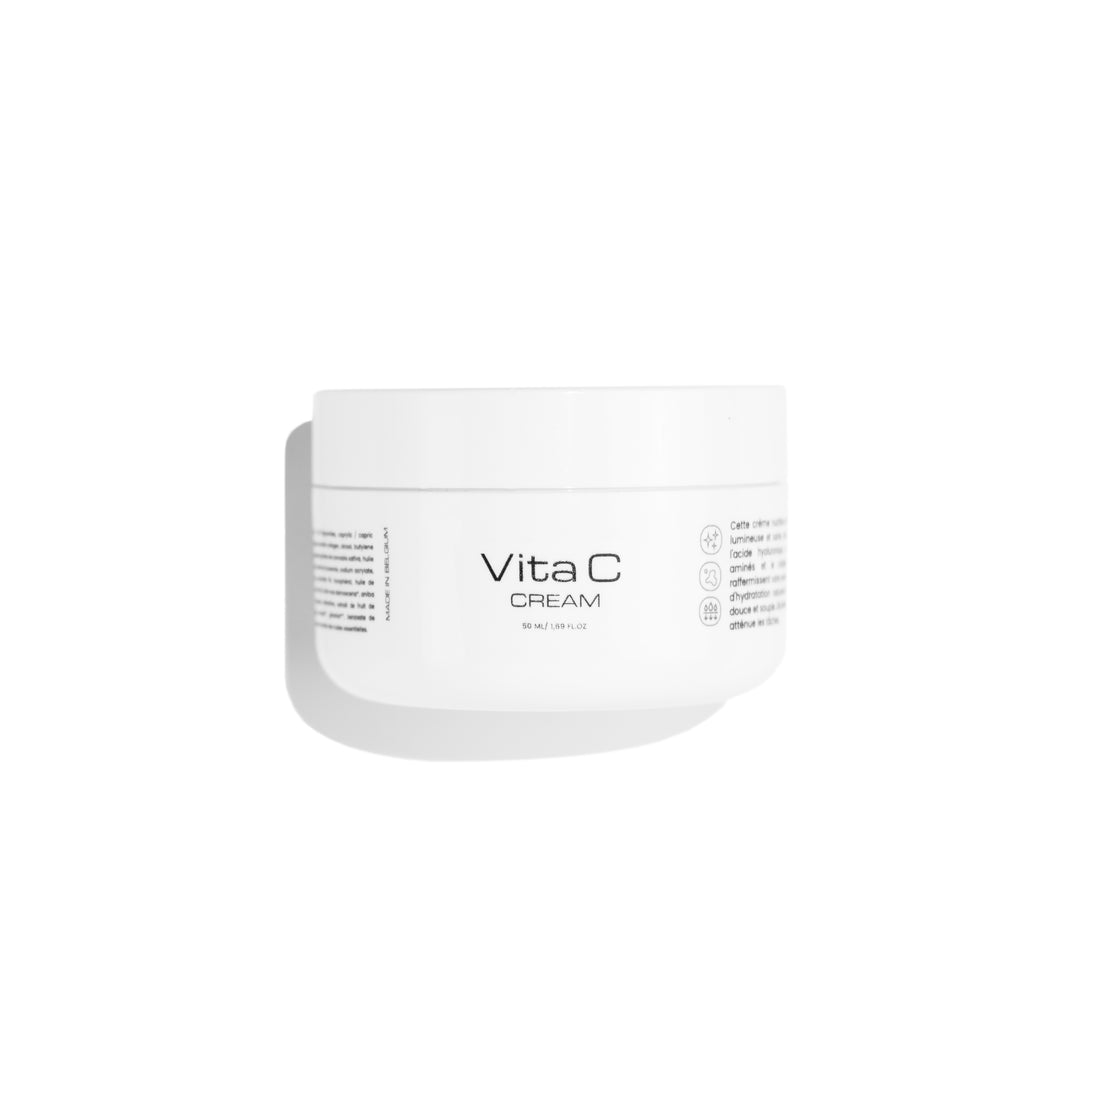 Vita C cream